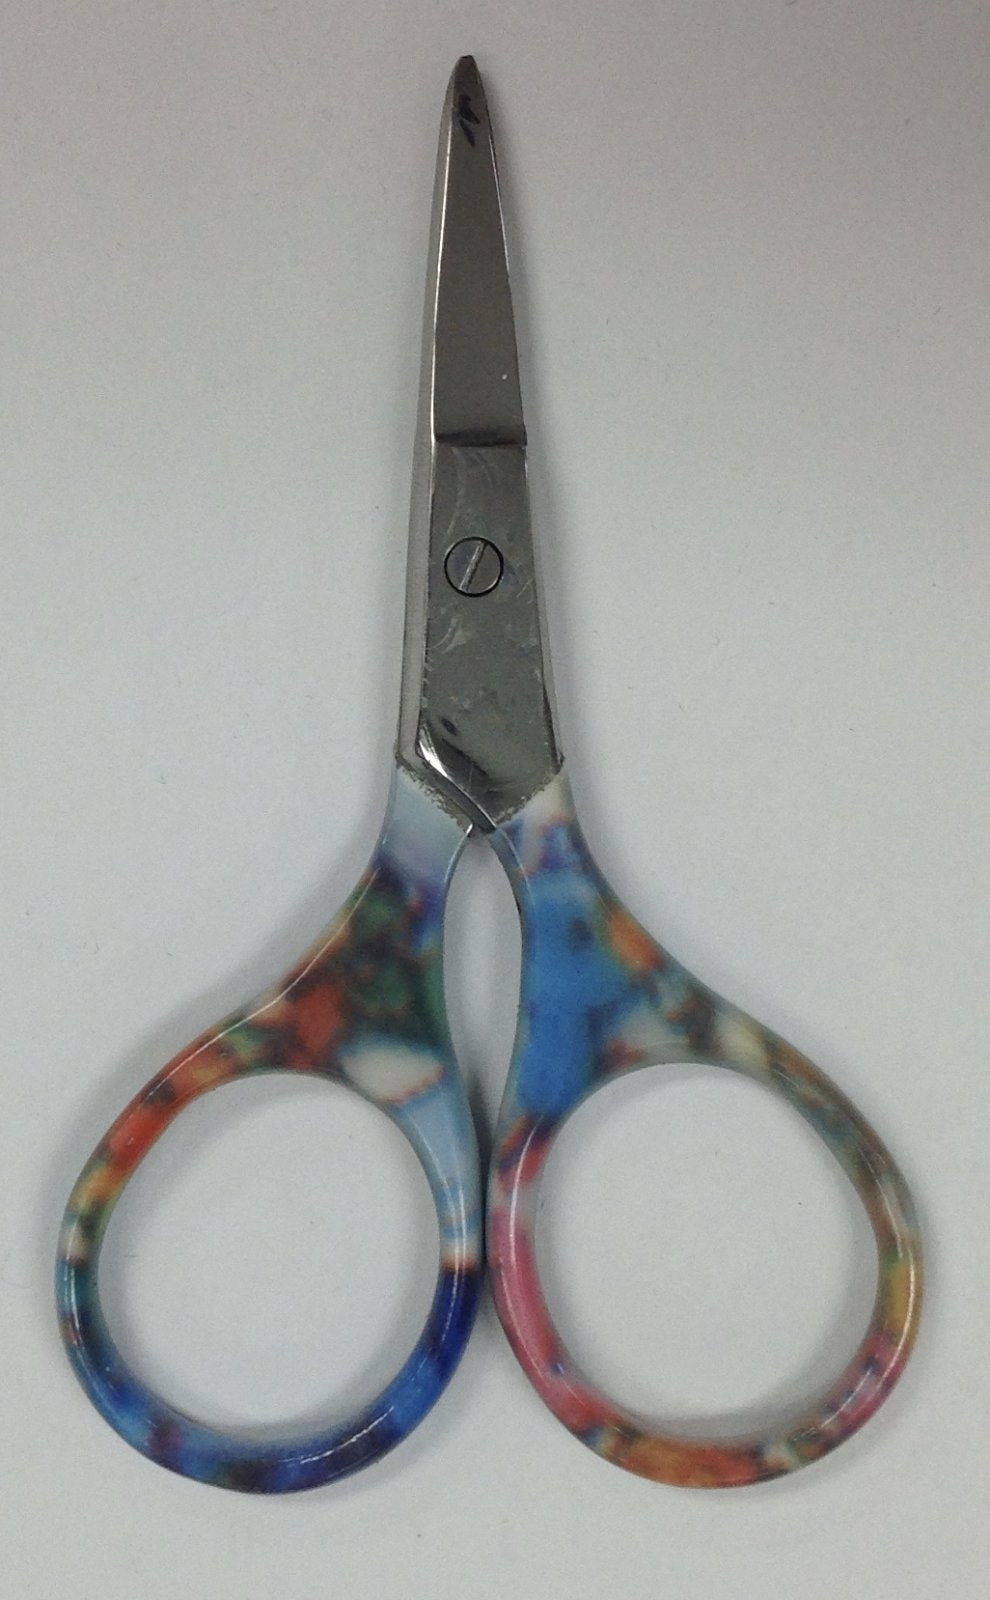 pretty petite scissors